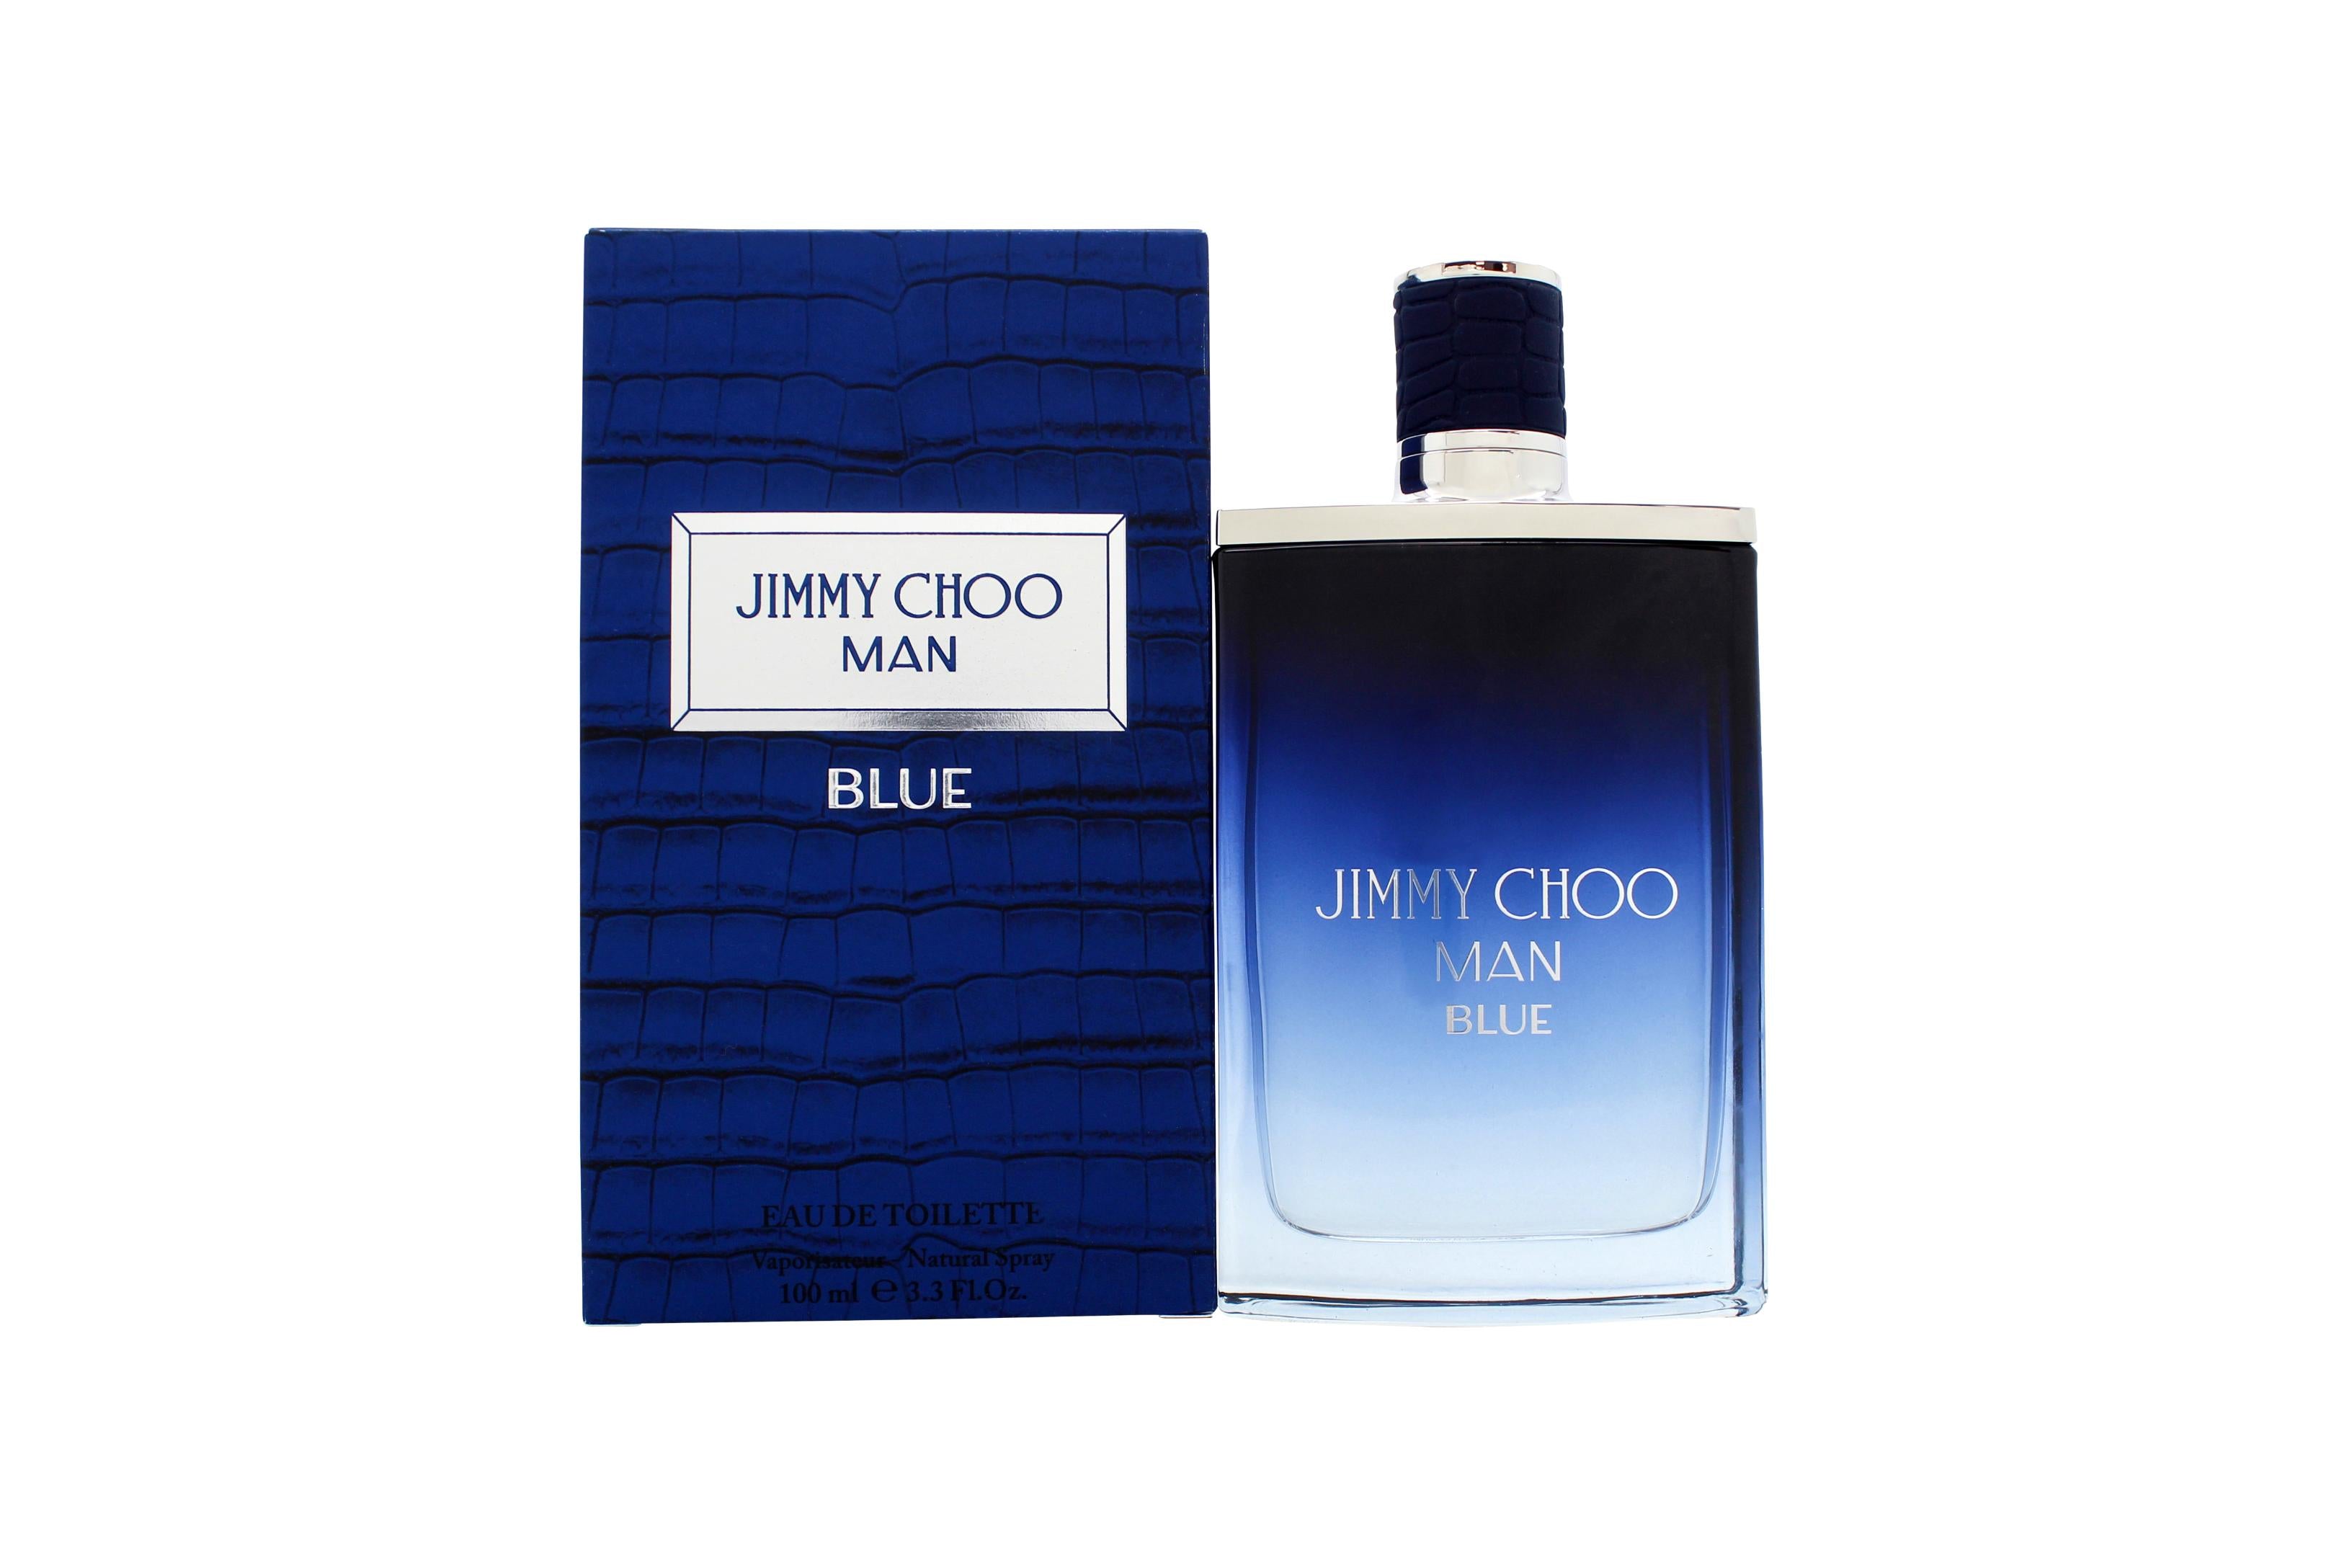 View Jimmy Choo Man Blue Eau de Toilette 100ml Spray information